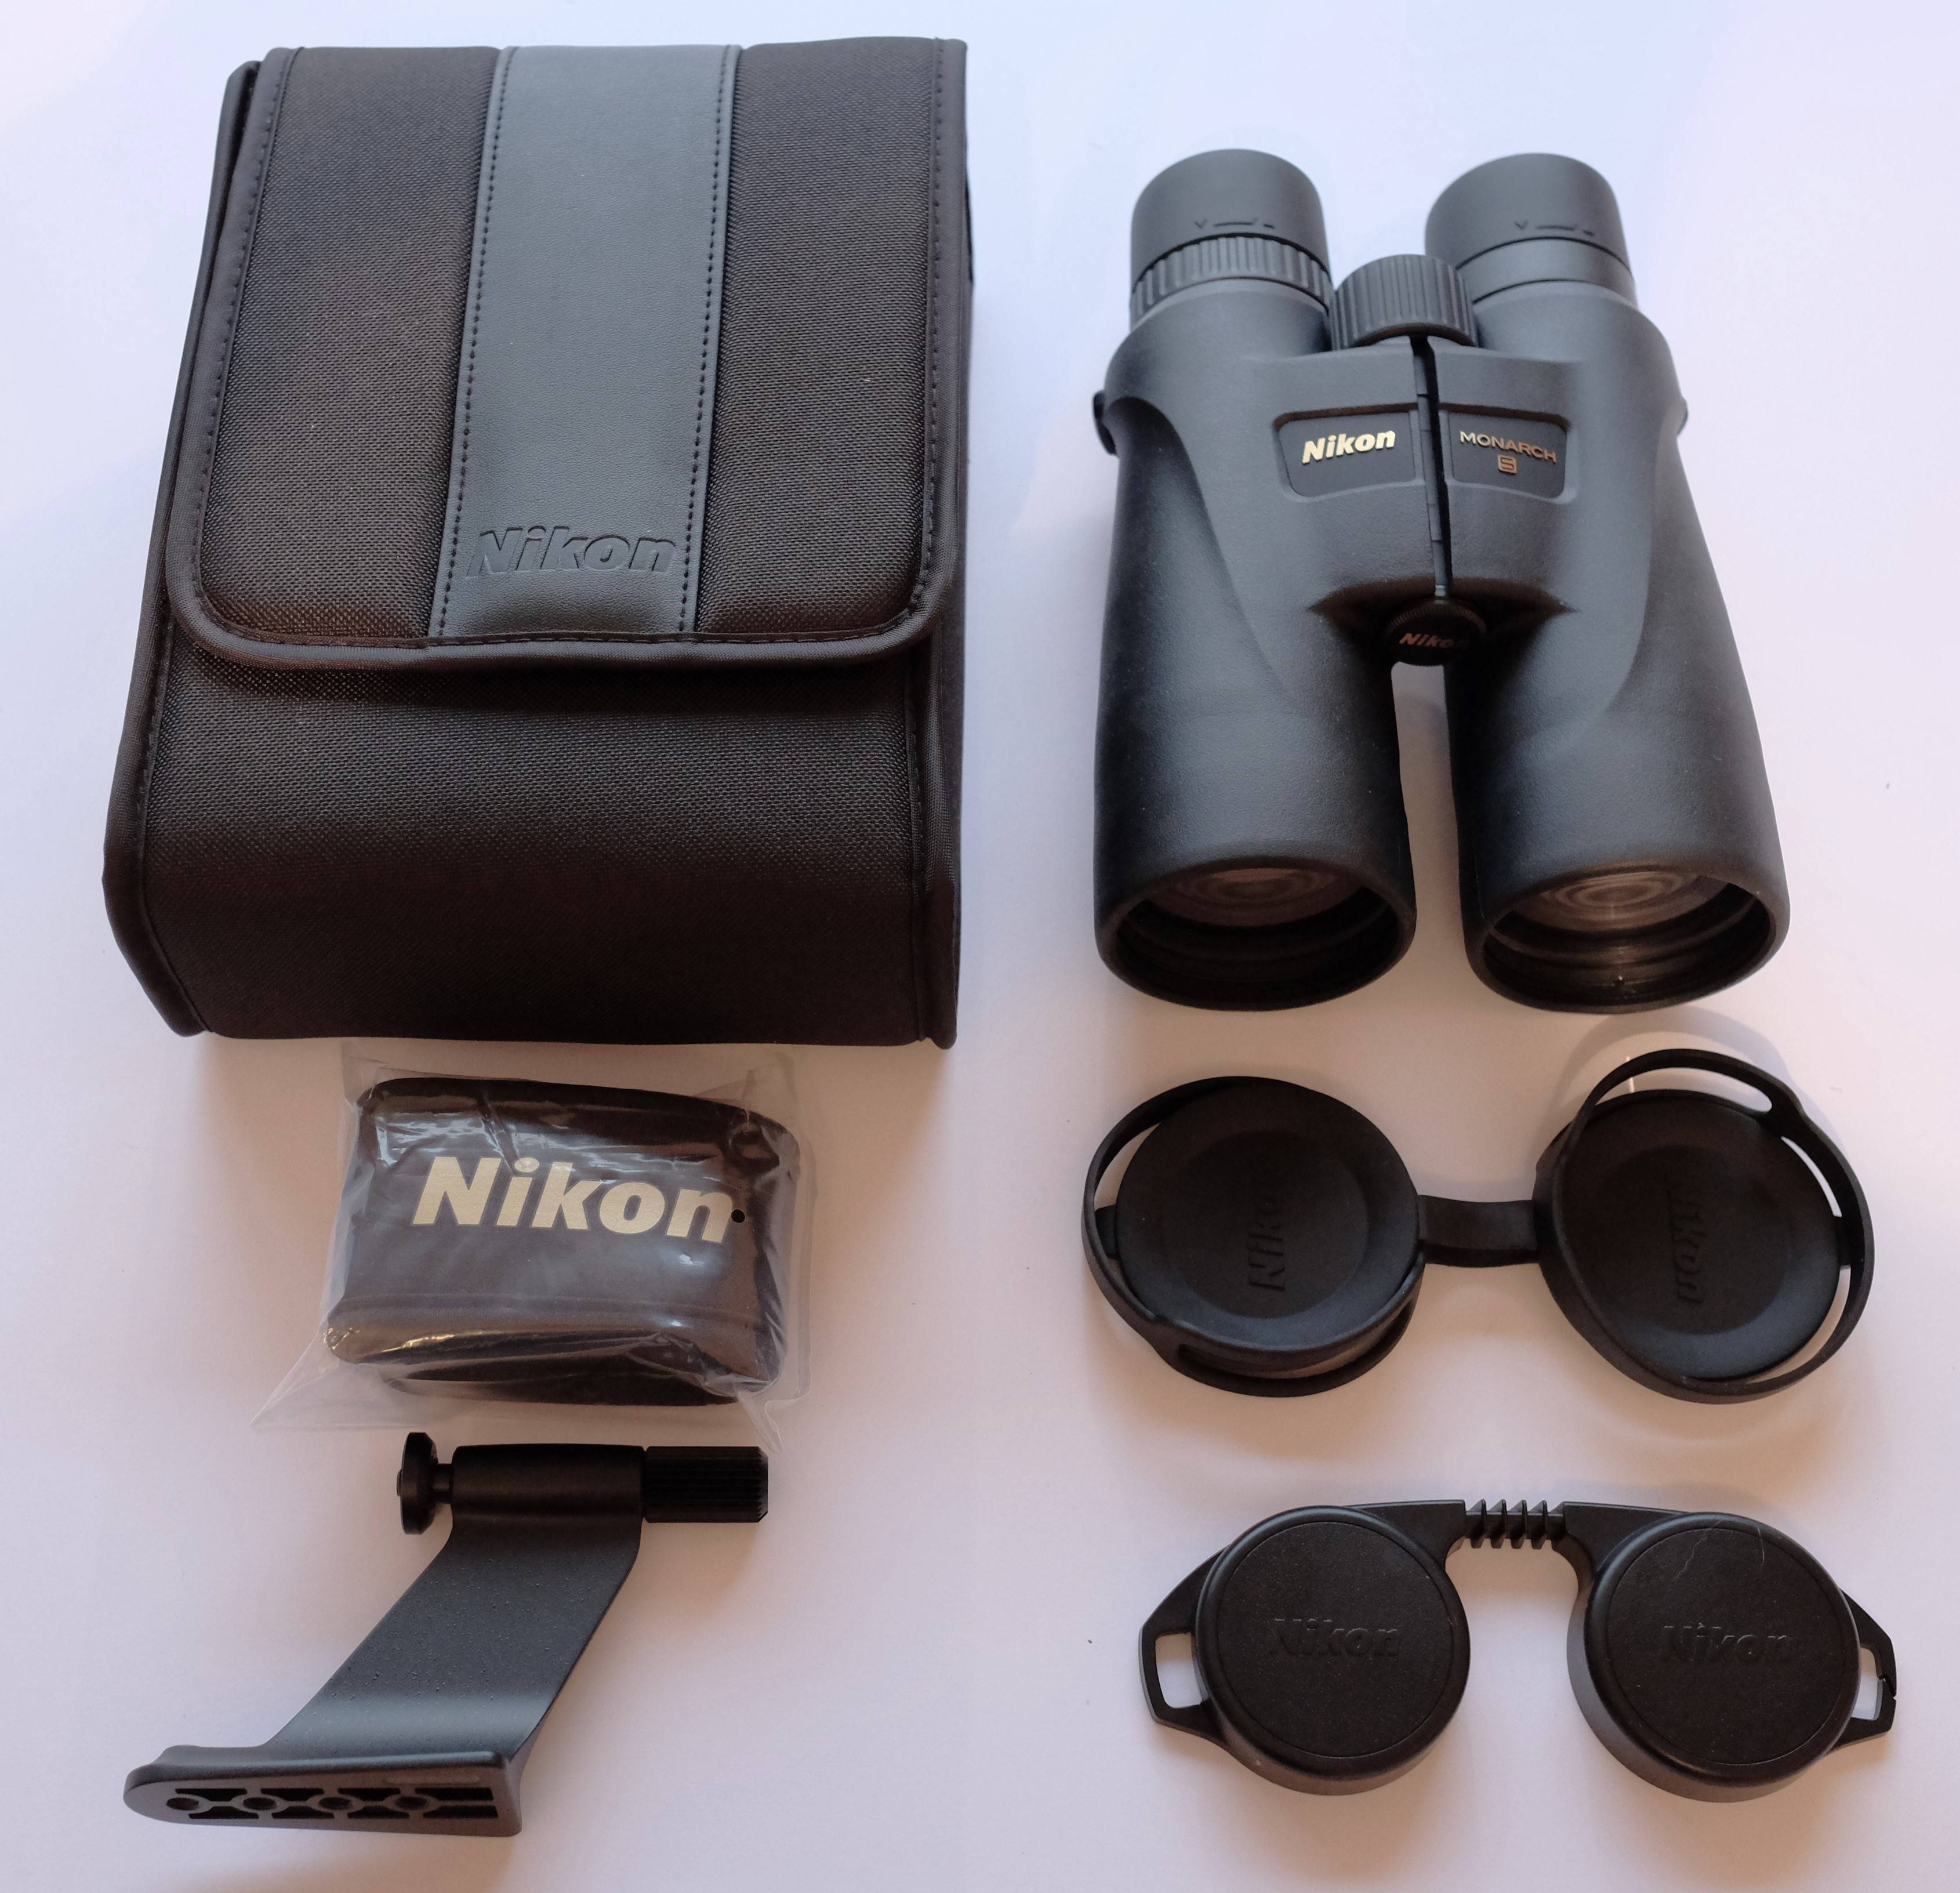 nikon monarch 5 16x56 binoculars